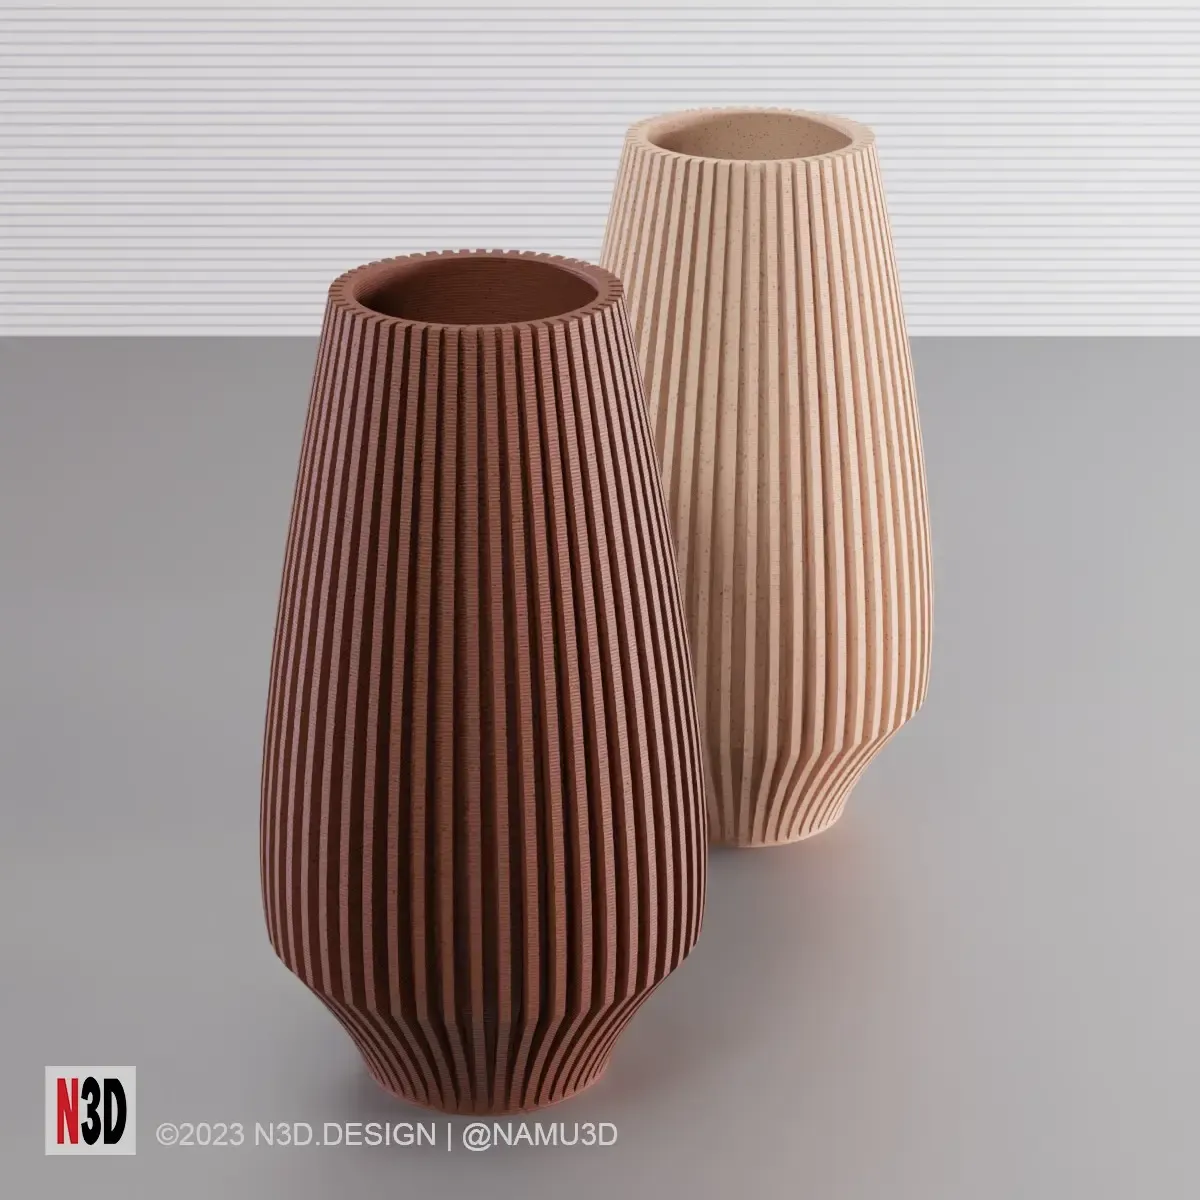 Vase 0012 A - Bullet vase